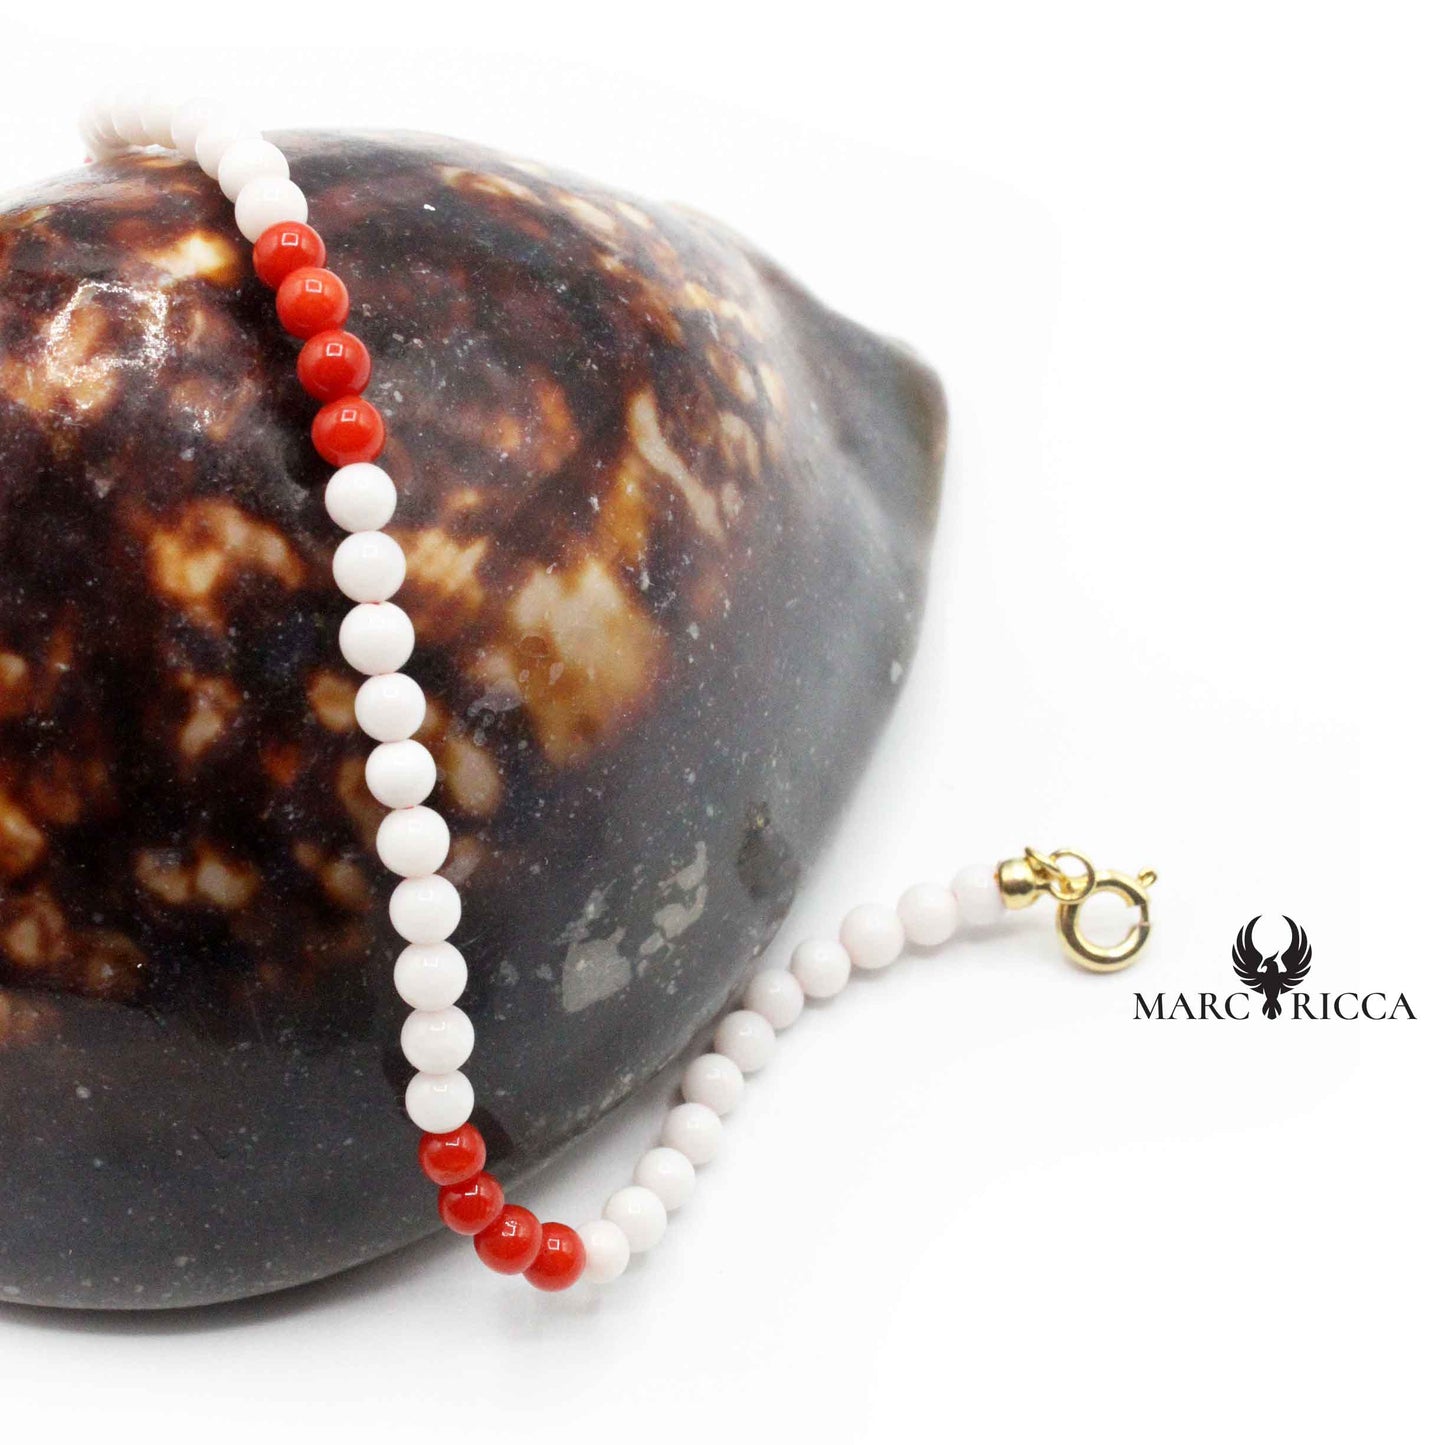 Bracelet Perles de Corail Rouge et Blanc